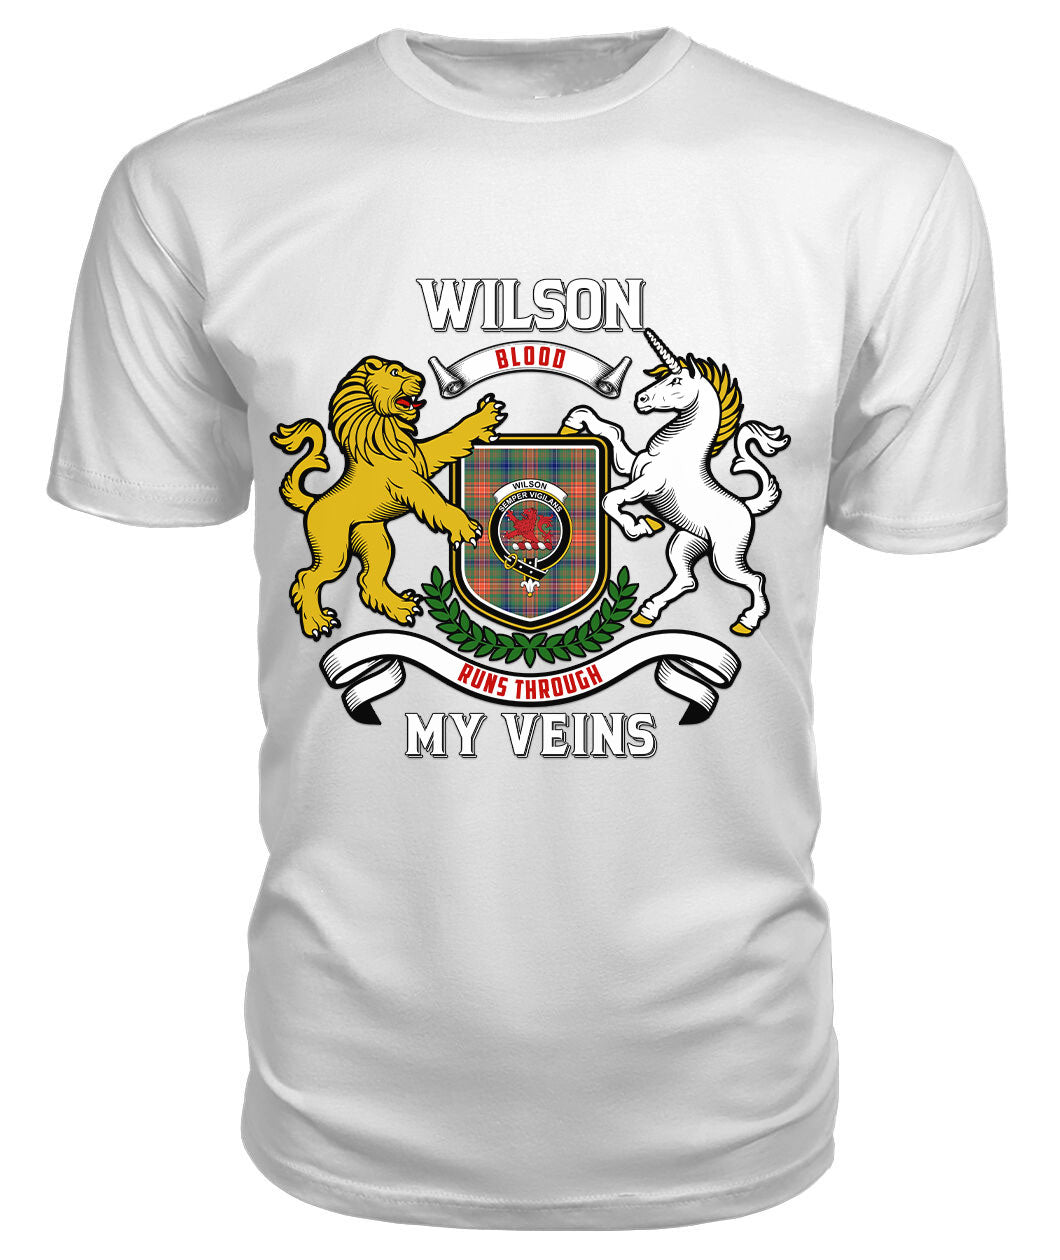 Wilson Ancient Tartan Crest 2D T-shirt - Blood Runs Through My Veins Style